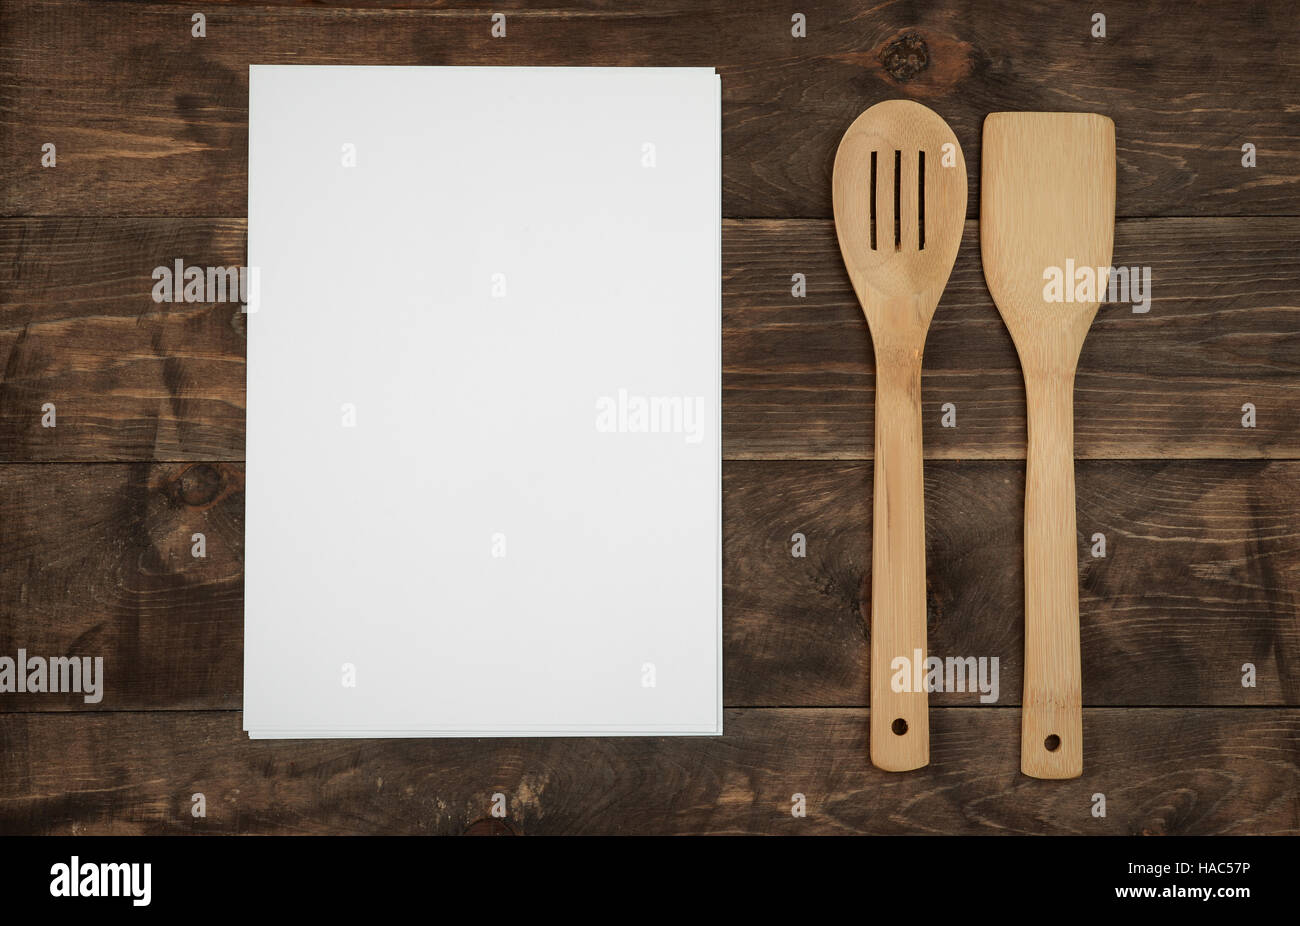 Utensili da cucina in legno bianco e fogli di carta per ricette sul pannello di legno Foto Stock